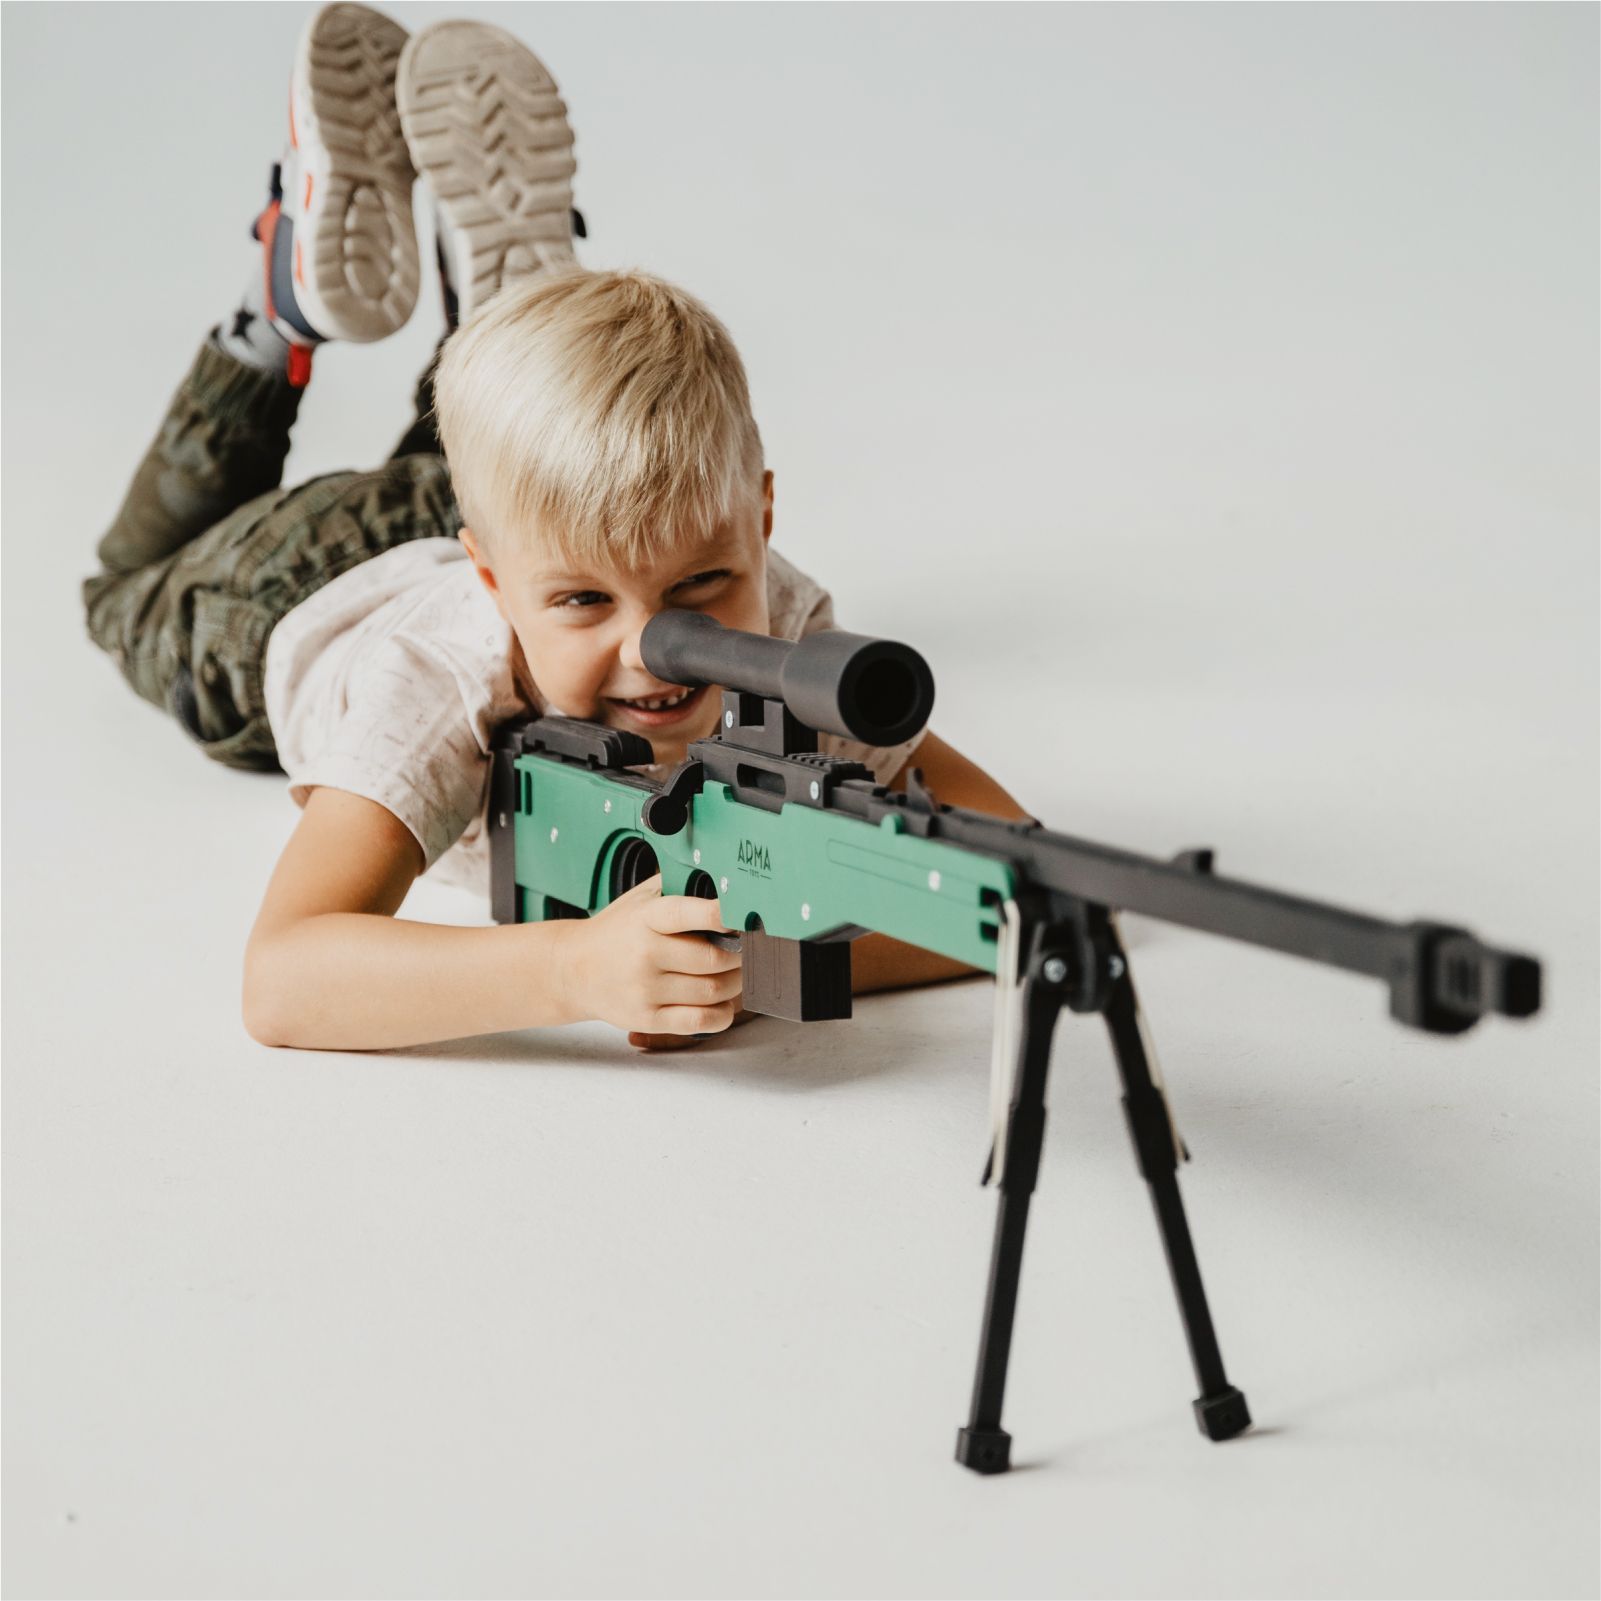 детская винтовка awp фото 52